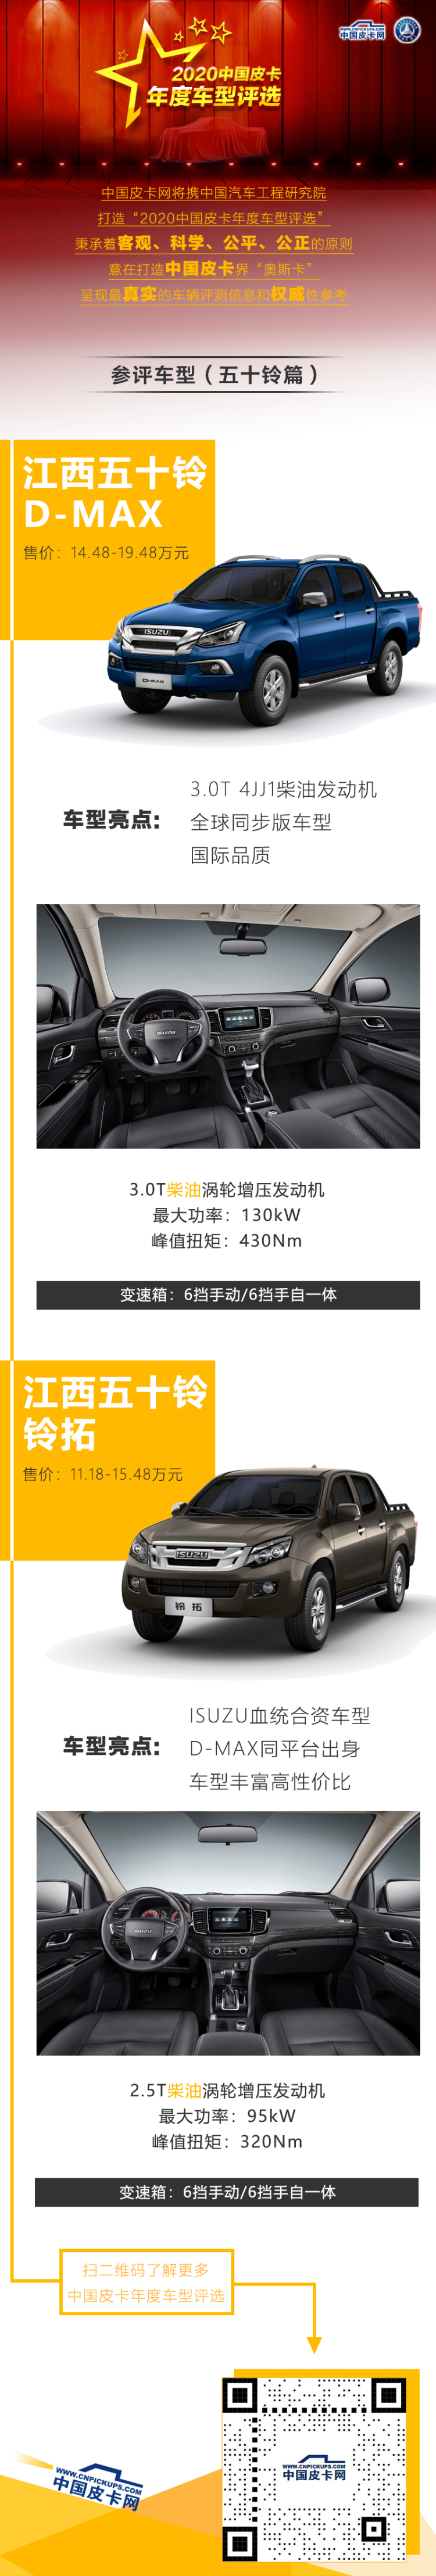 江西五十铃两款车型参评“2020中国皮卡年度车型评选”